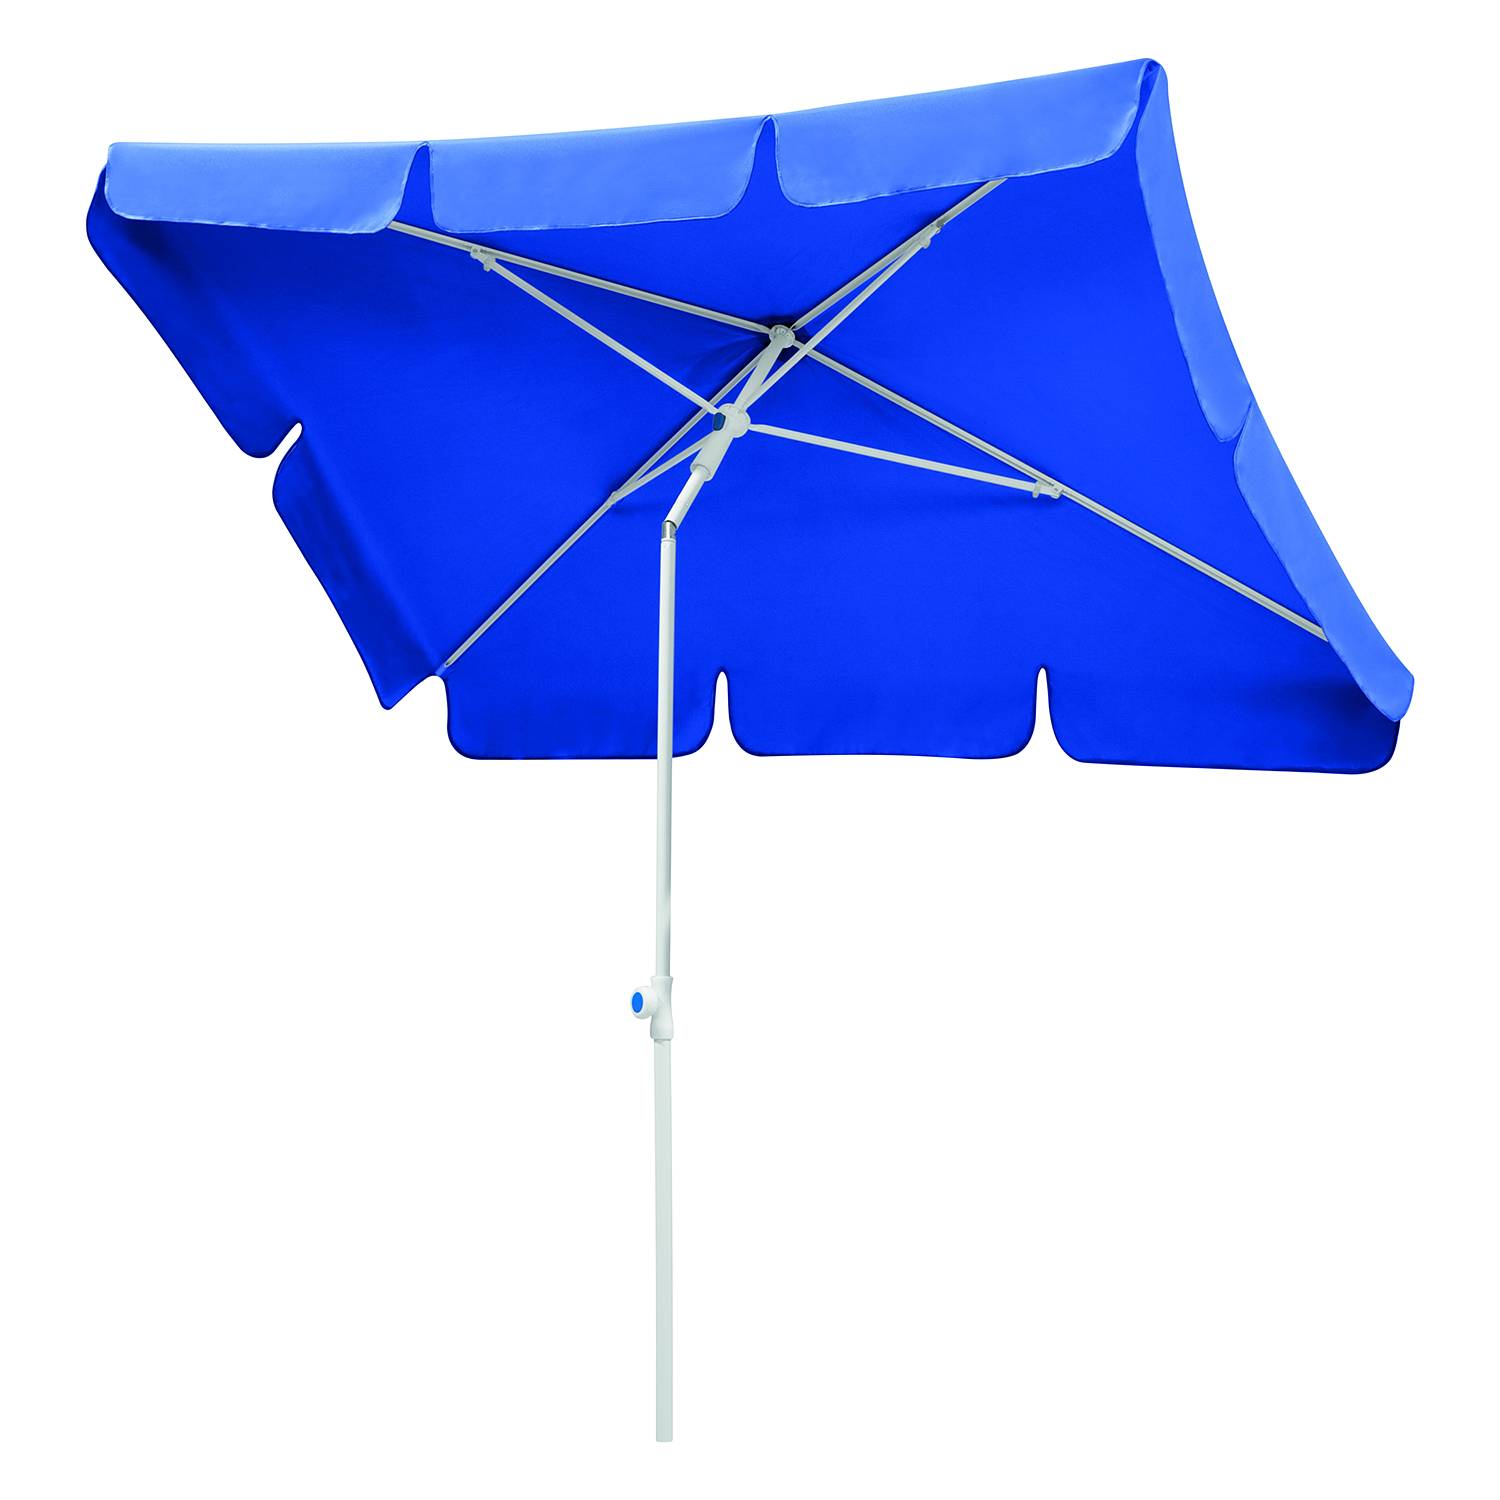 Sonnenschirm Ibiza - Stahl/Polyester - Weiß/Blau - 180 x 120 cm, Schneider Schirme